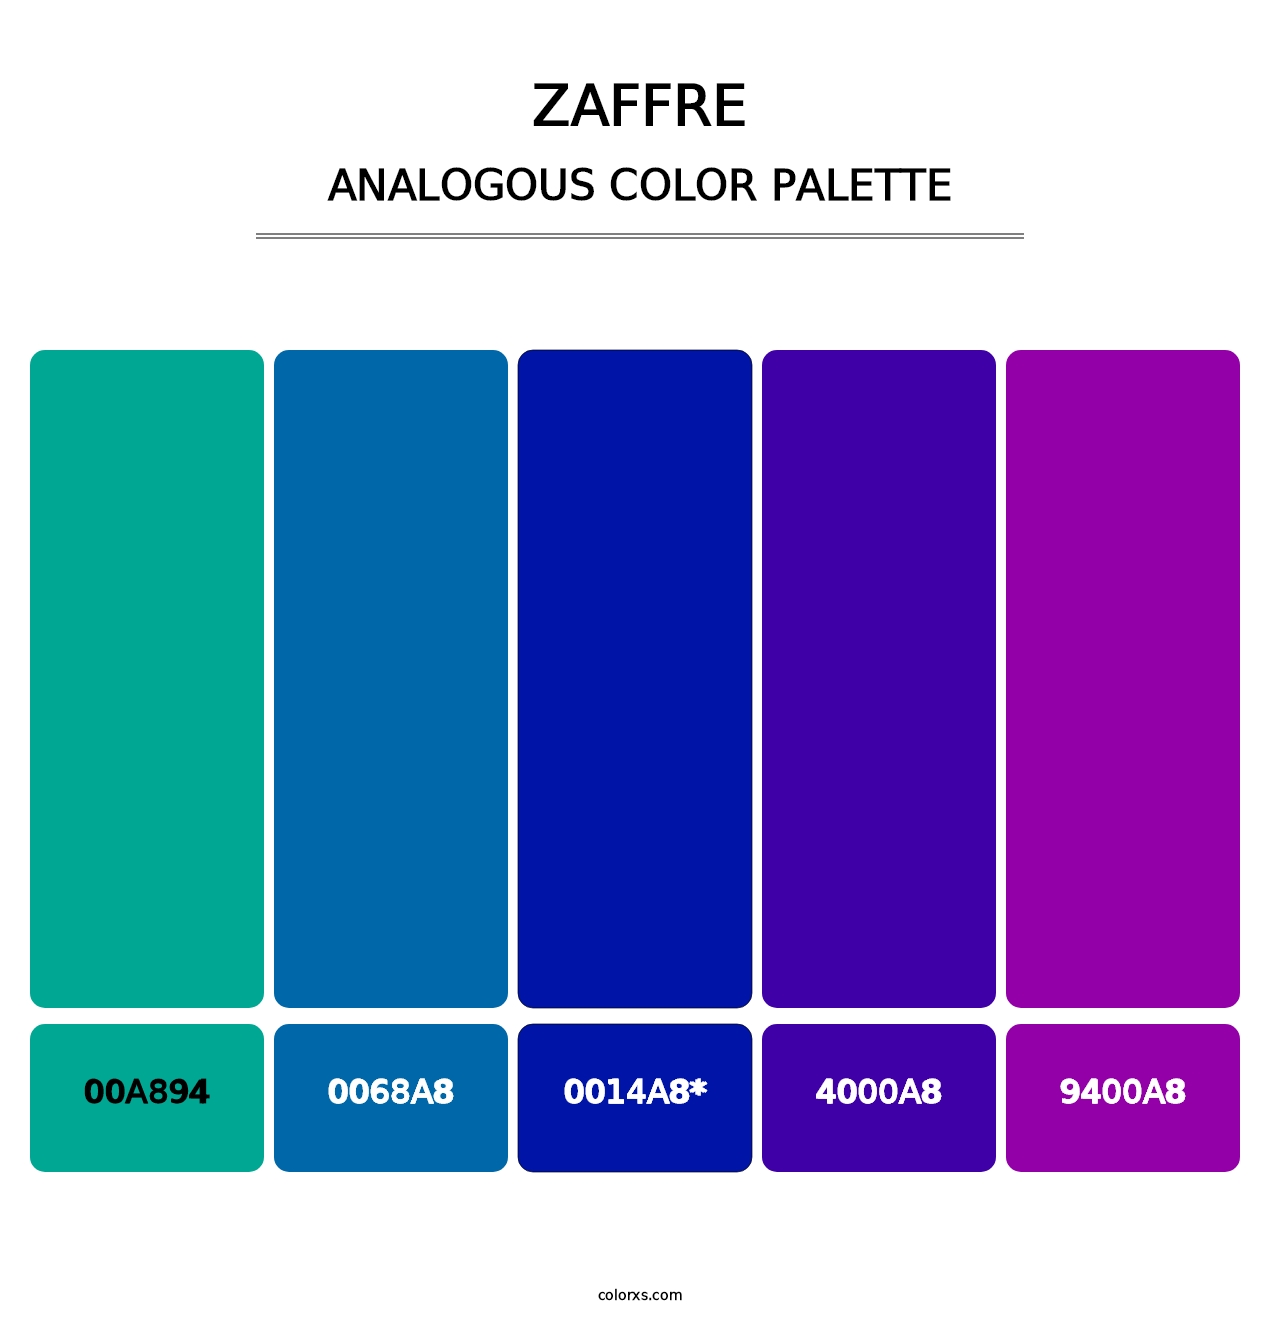 Zaffre - Analogous Color Palette